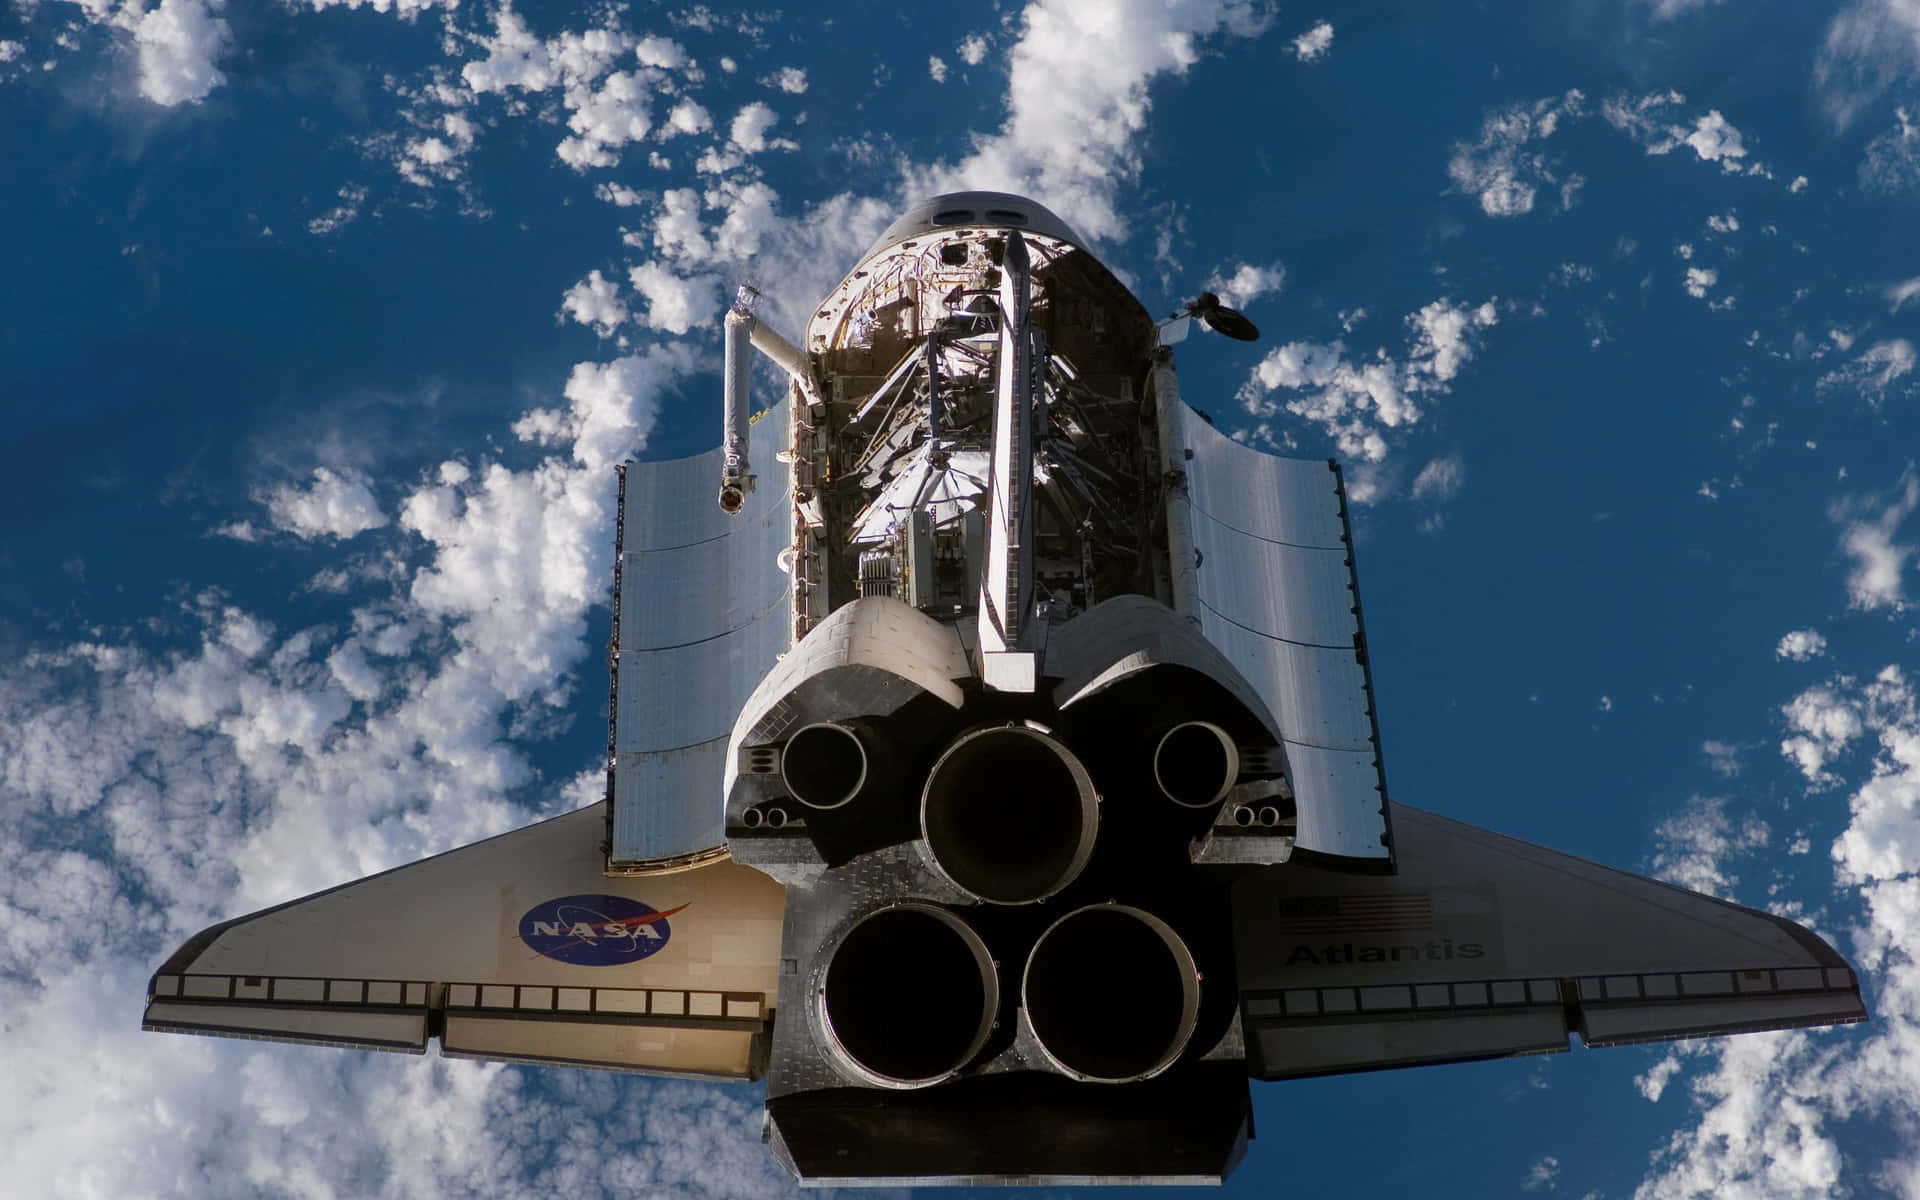 A space shuttle taking flight Wallpaper